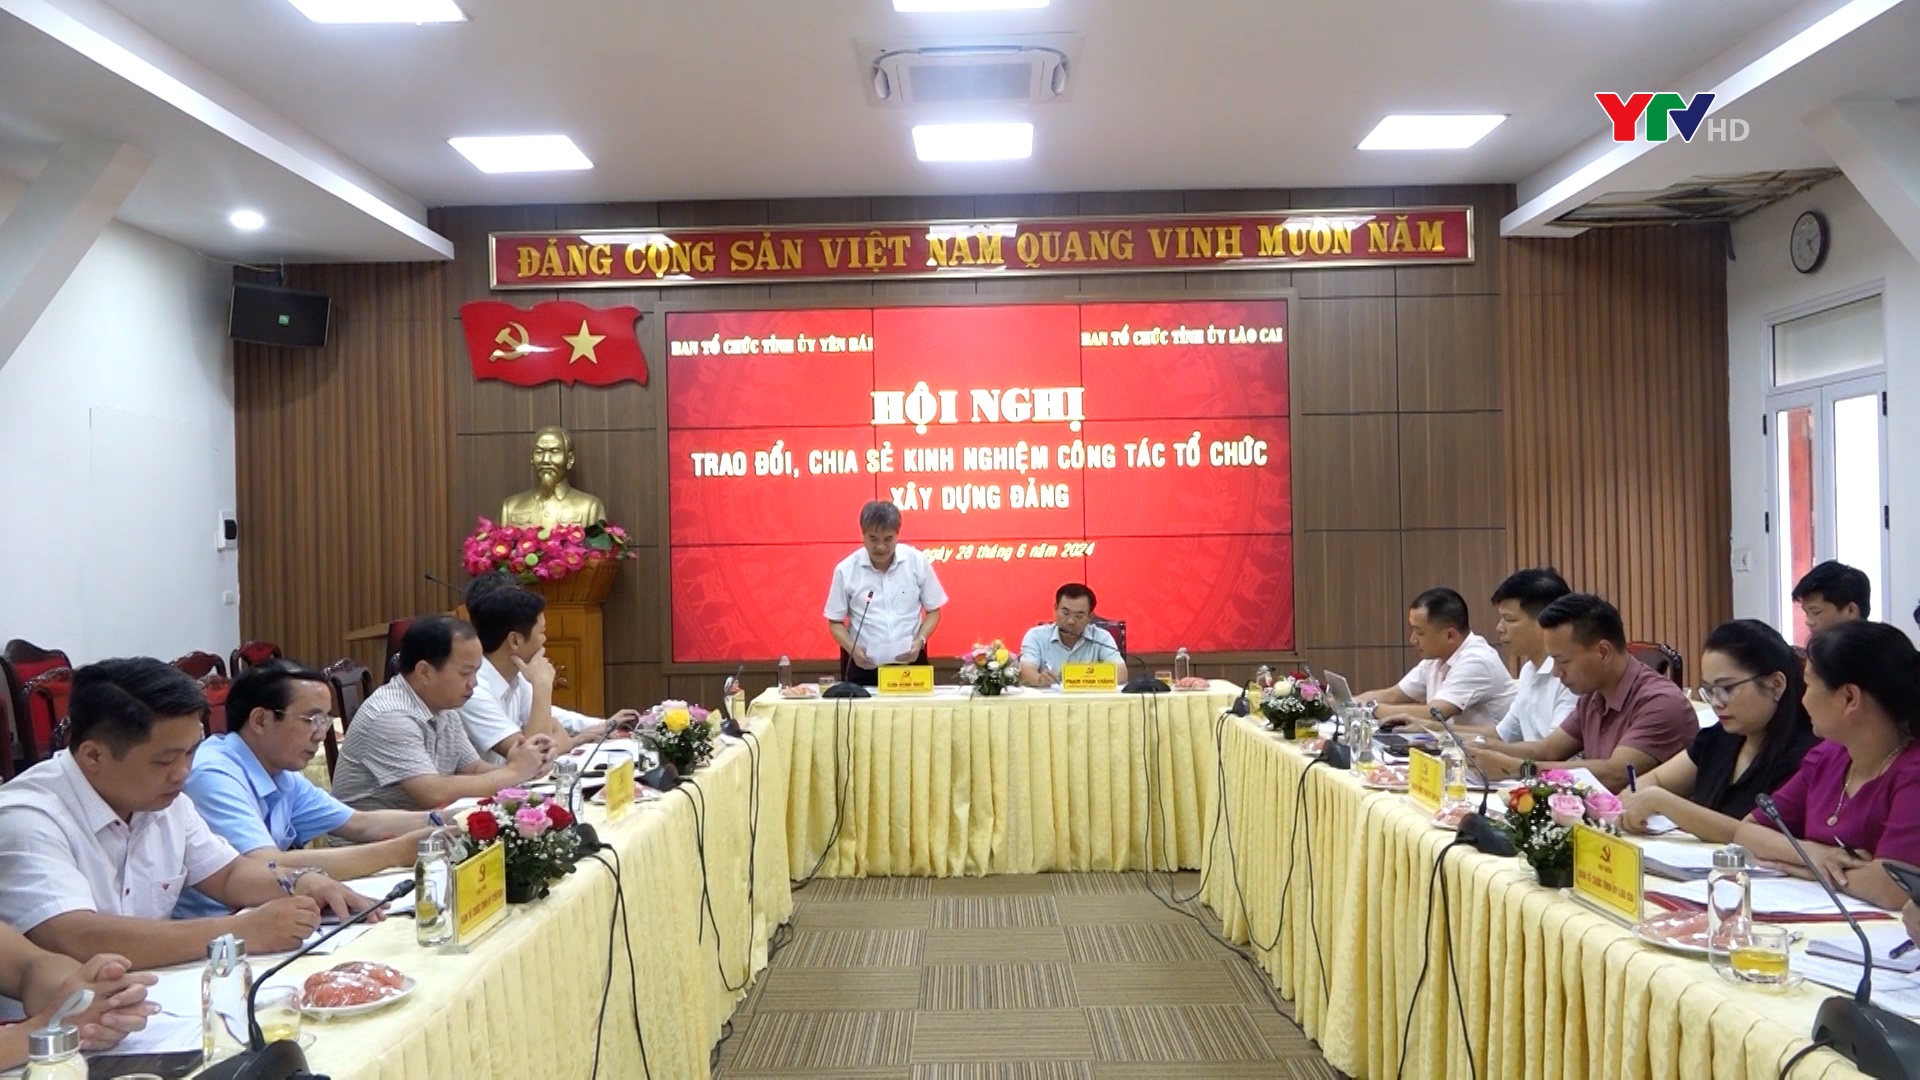 Ban Tổ chức Tỉnh ủy Yên Bái và Lào Cai trao đổi, chia sẻ kinh nghiệm về công tác tổ chức xây dựng Đảng